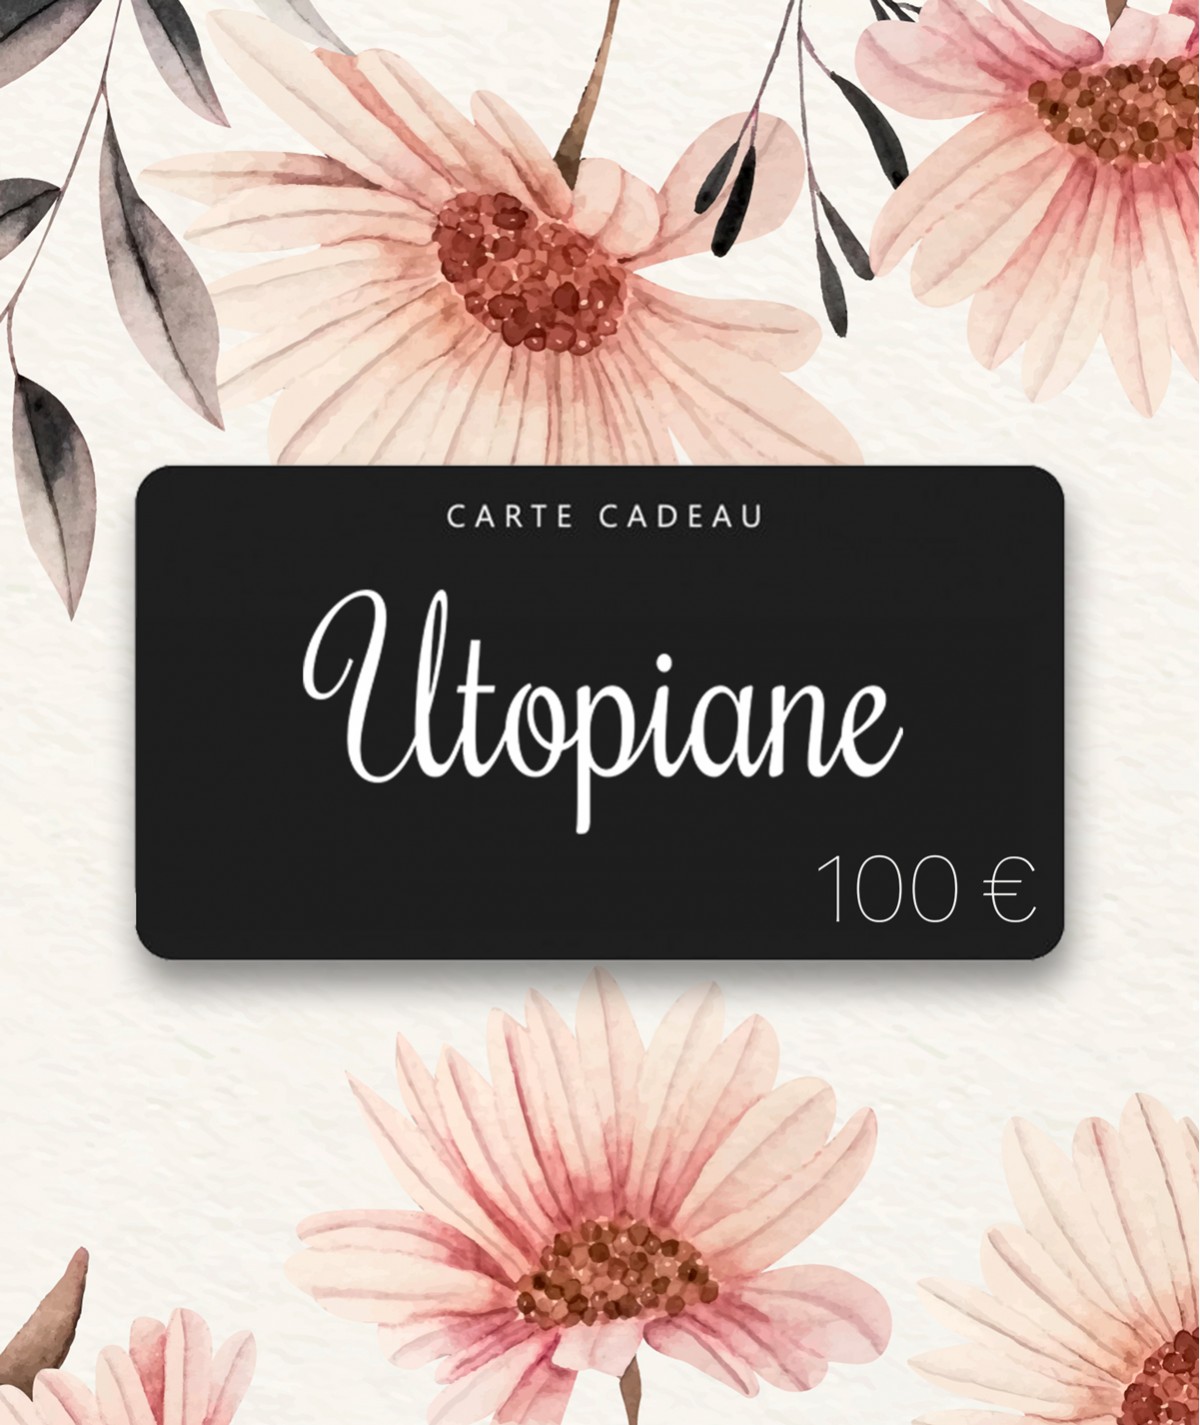 Utopiane Carte cadeau 100 euros